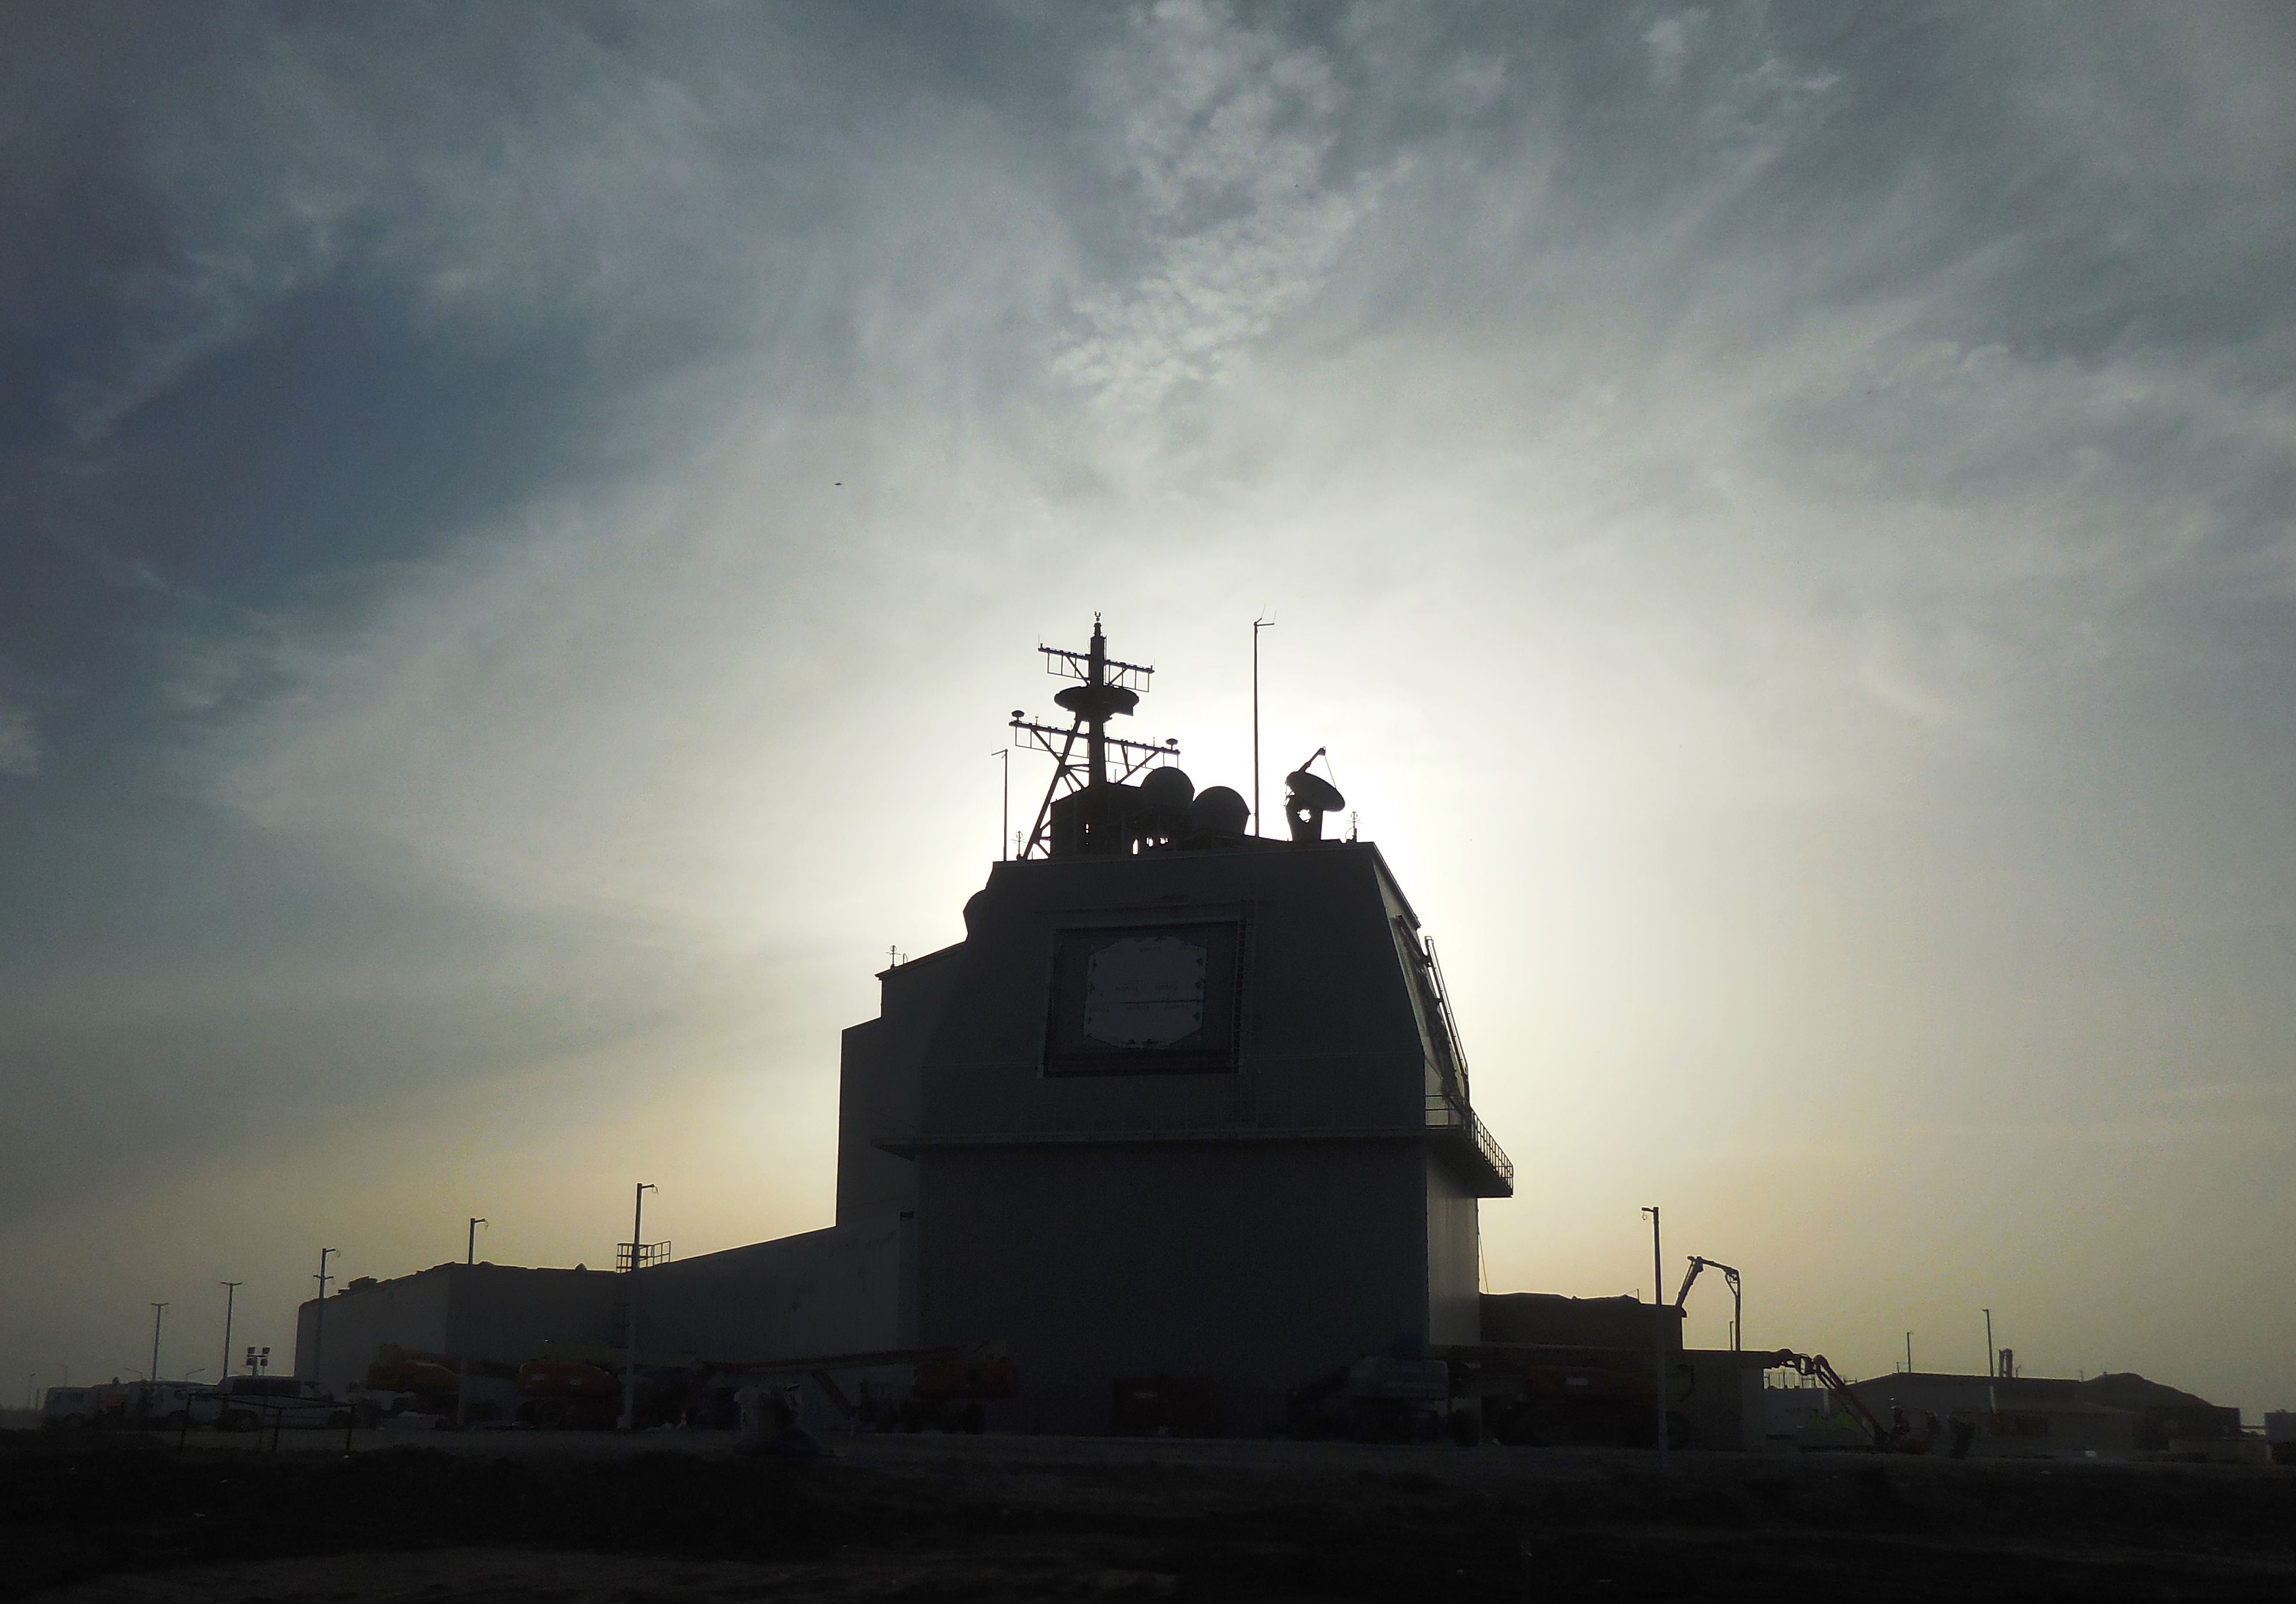 Aegis Ashore Missile Defense Complex in Devesulu, Romania. MDA Photo 